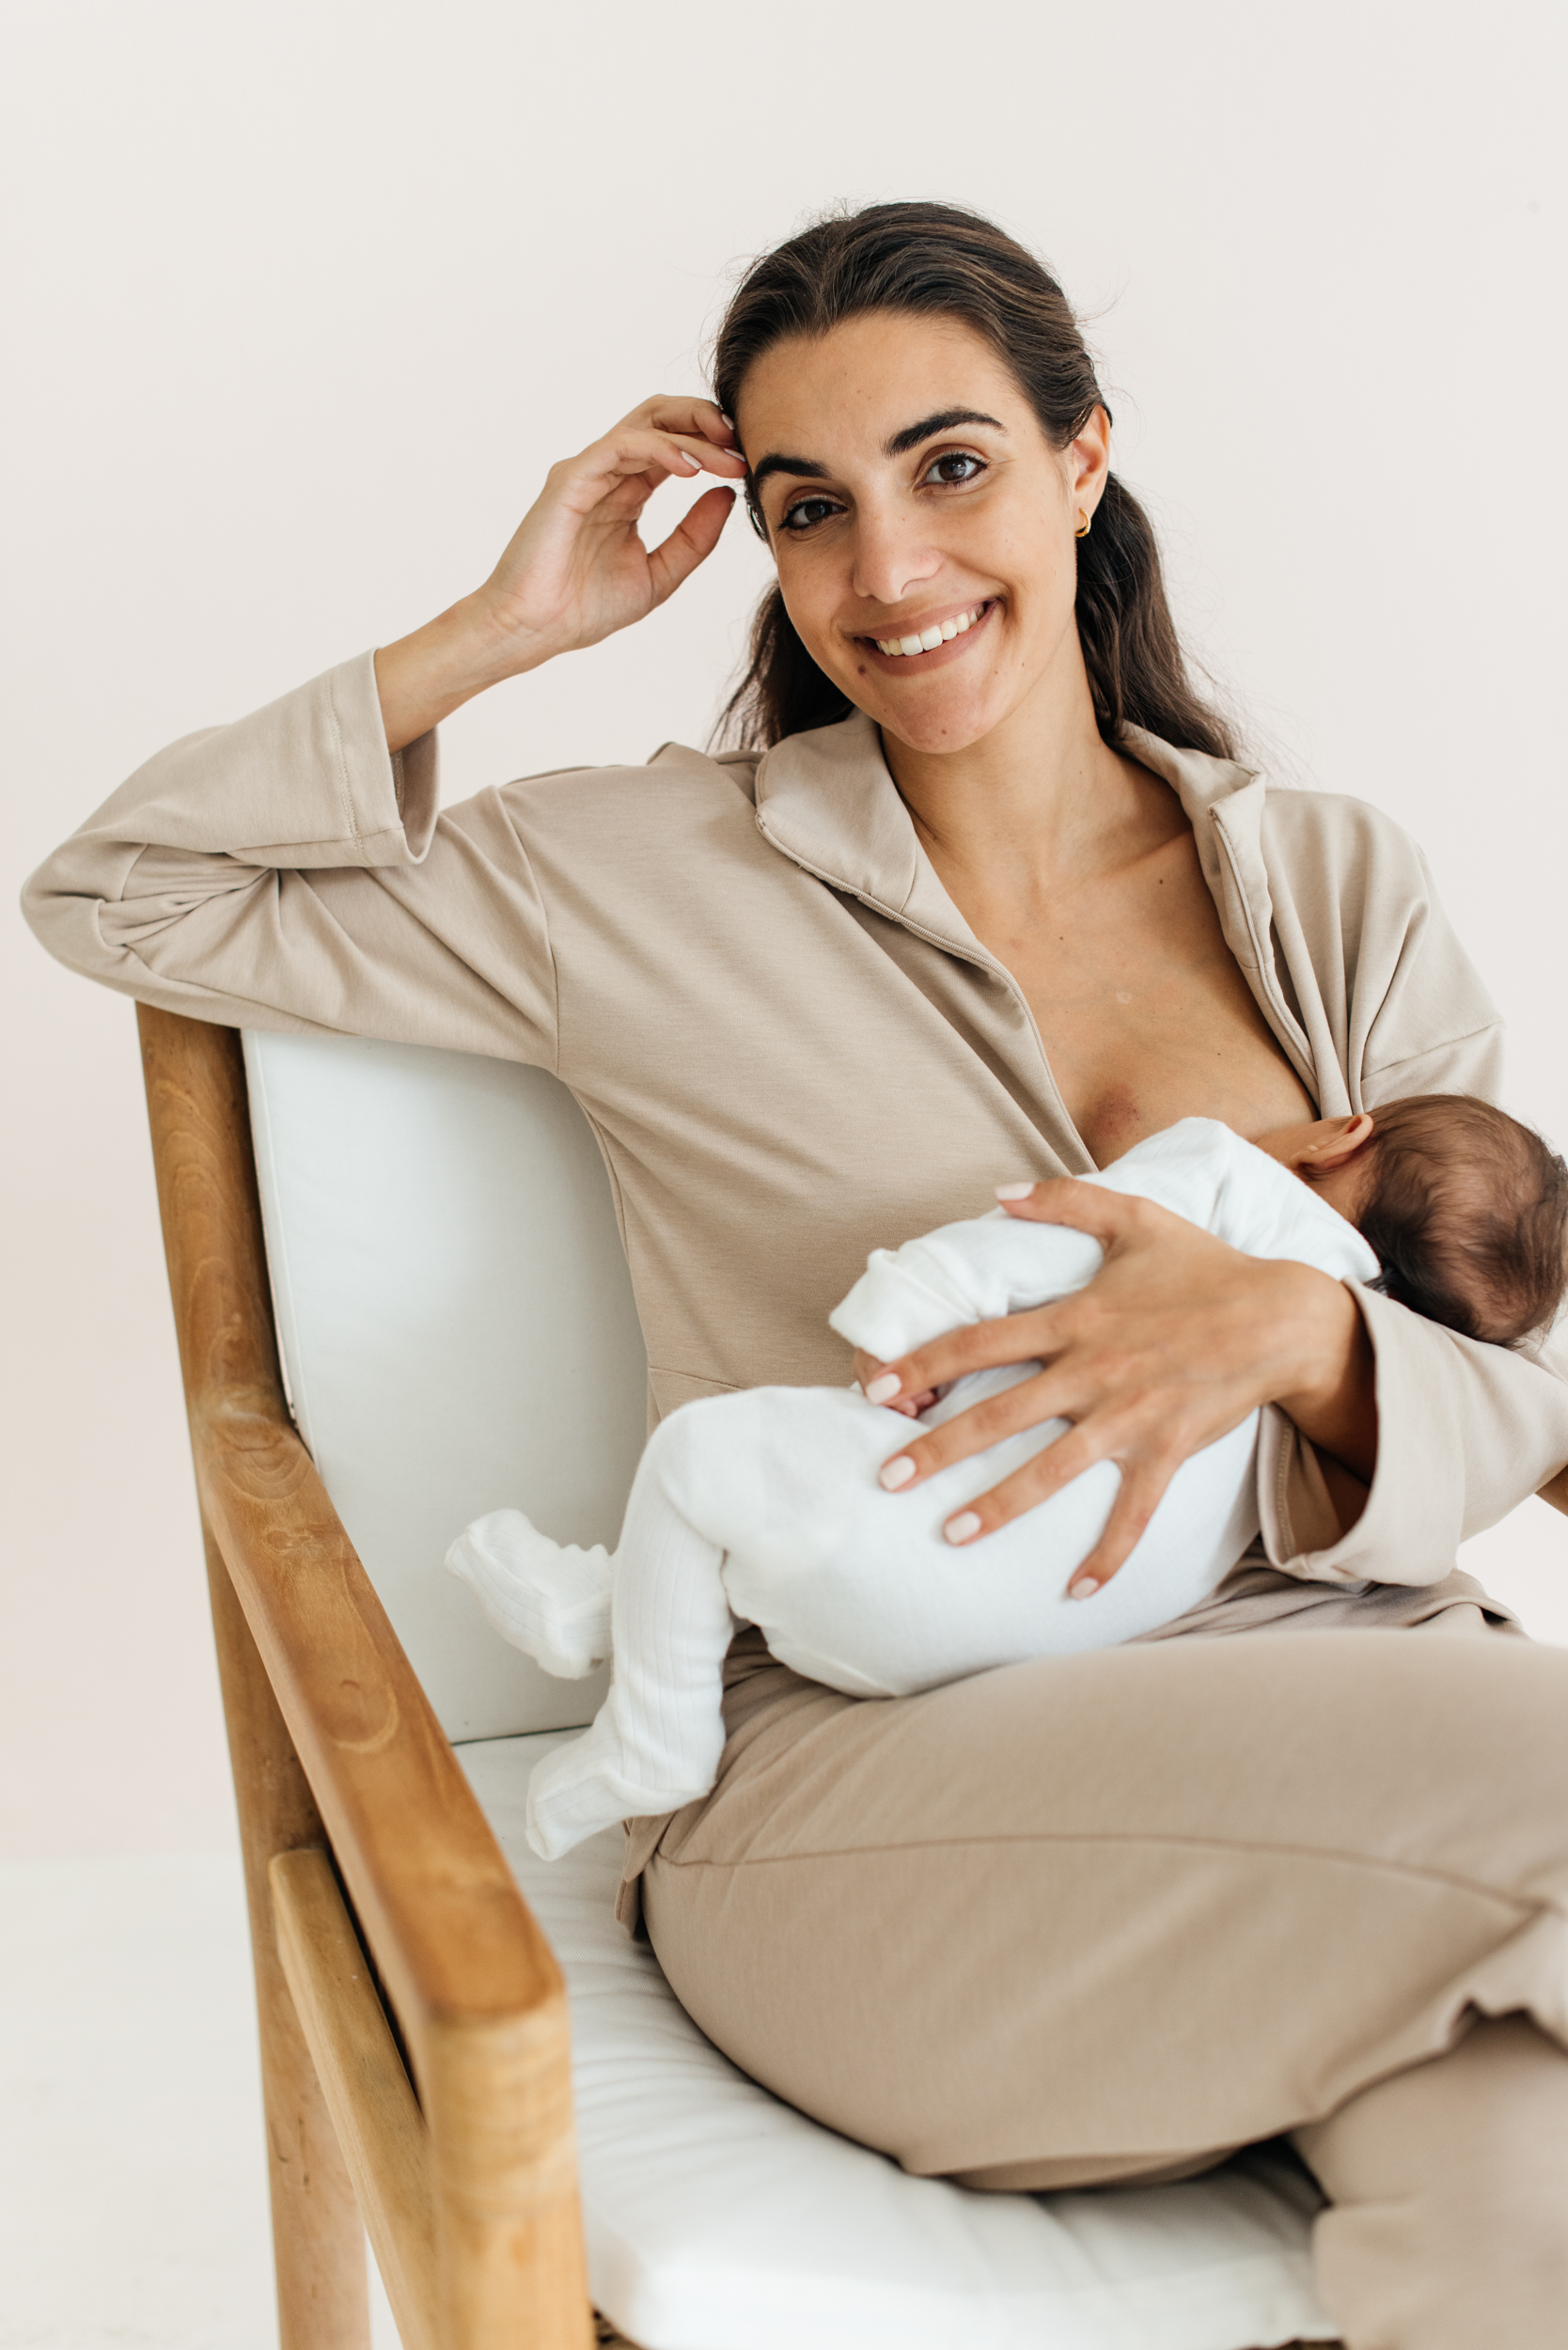 Busting those breastfeeding myths